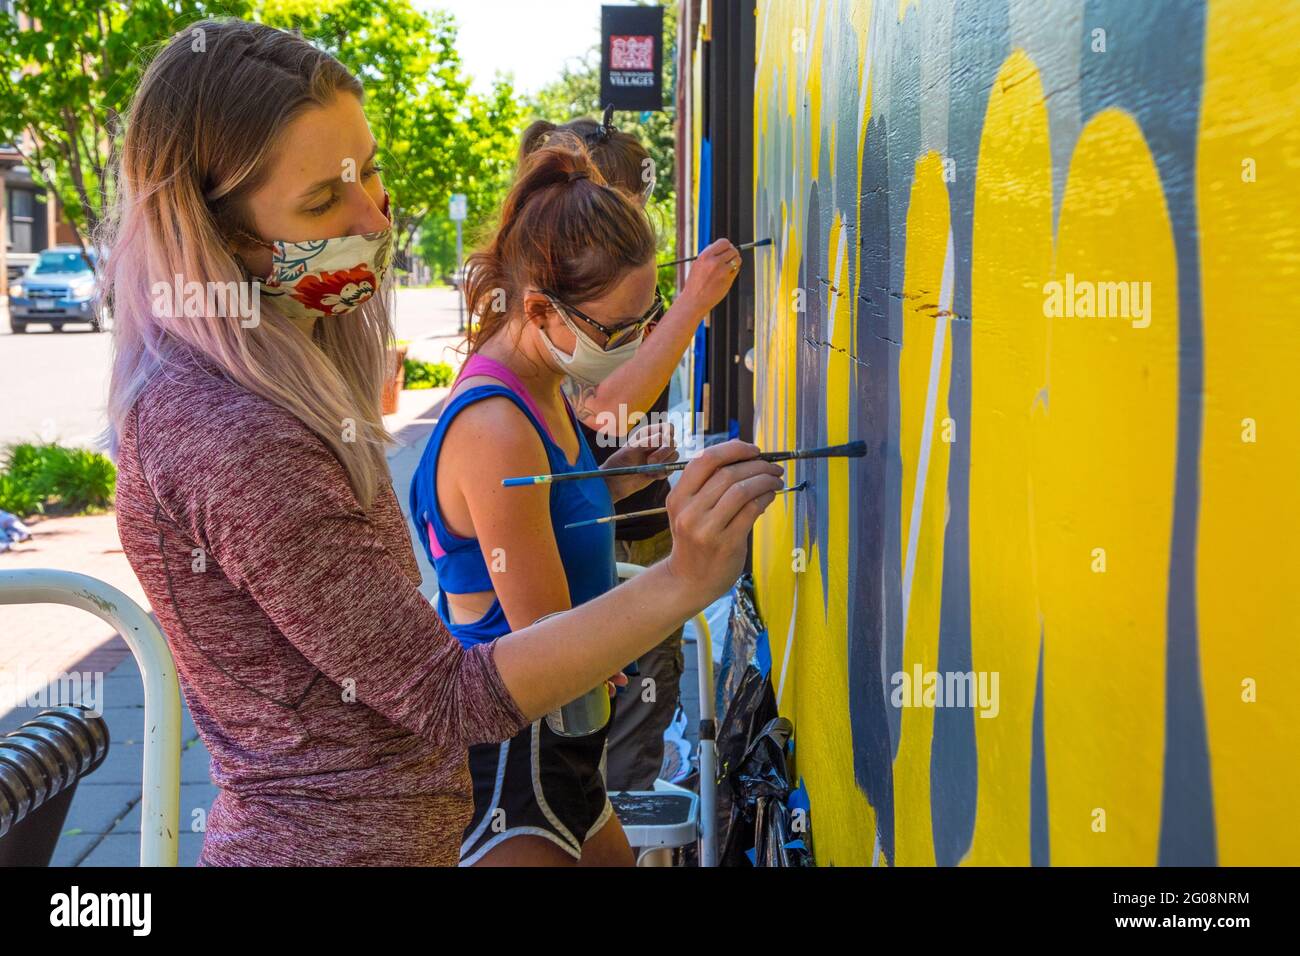 Des femmes peignent une fresque lors des manifestations de George Floyd, St. Paul, Minnesota, États-Unis Banque D'Images